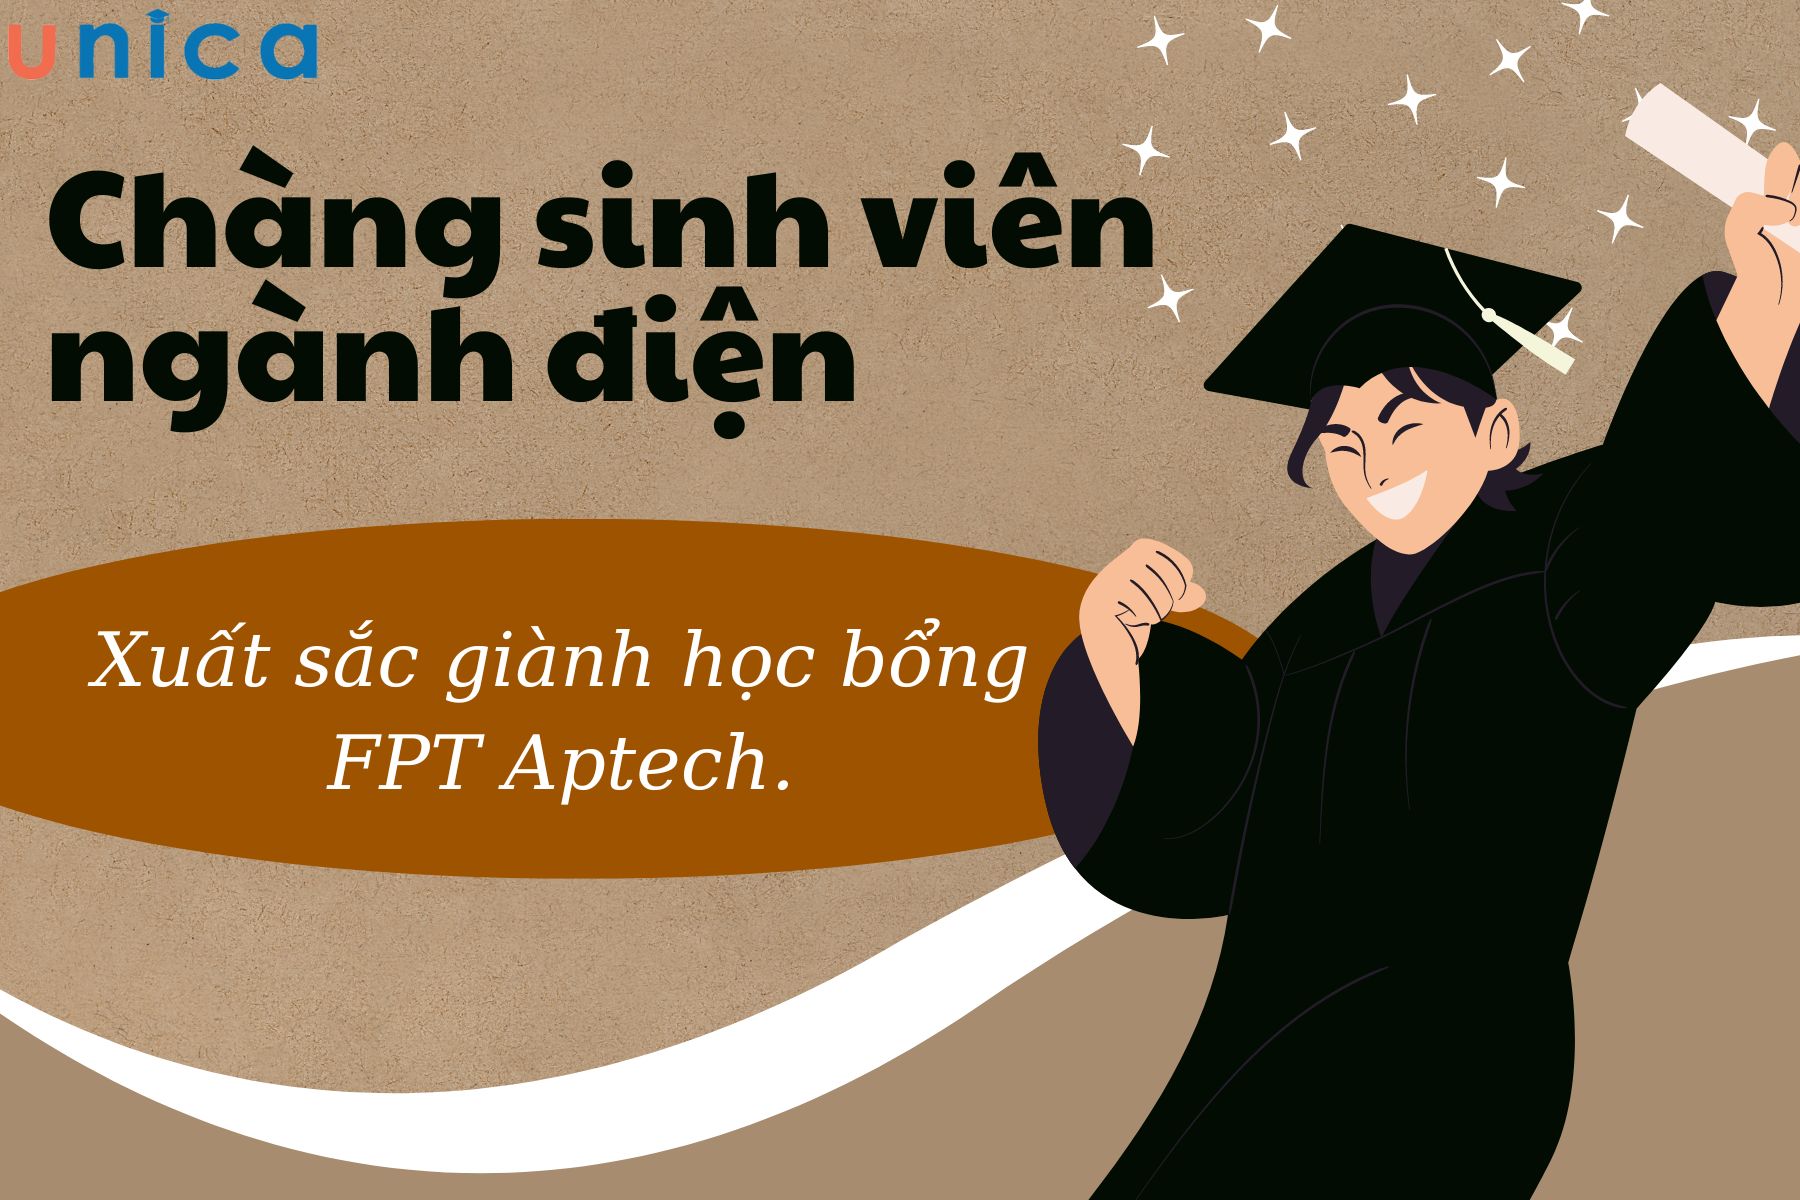 Chàng sinh viên ngành điện xuất sắc giành học bổng toàn phần FPT Aptech